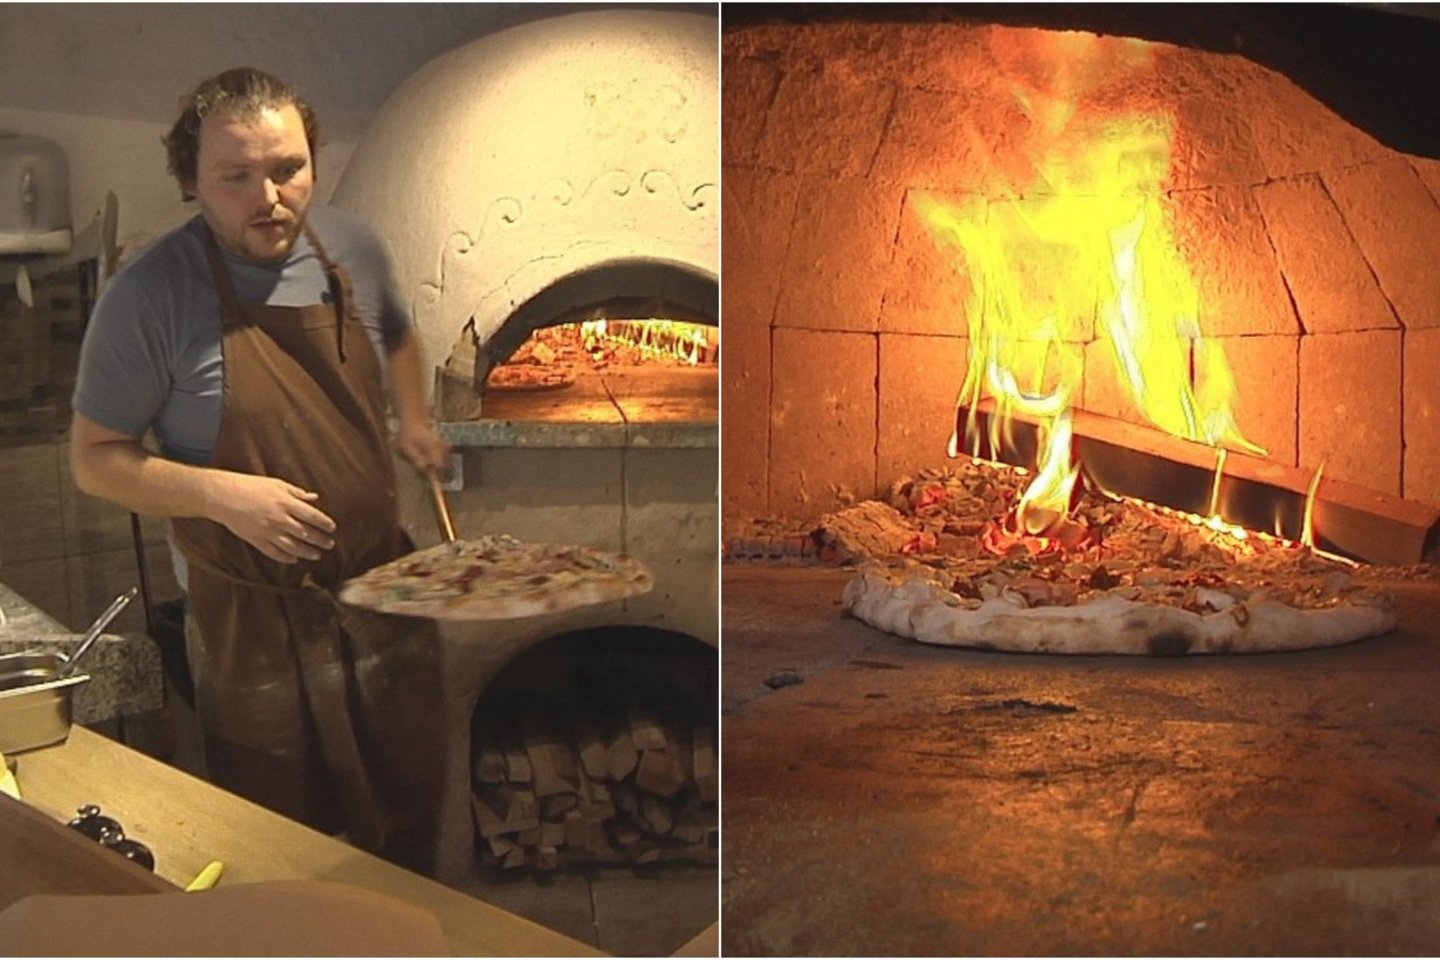  Vegetariškas picas kepa tikroje malkomis kūrenamoje krosnyje.